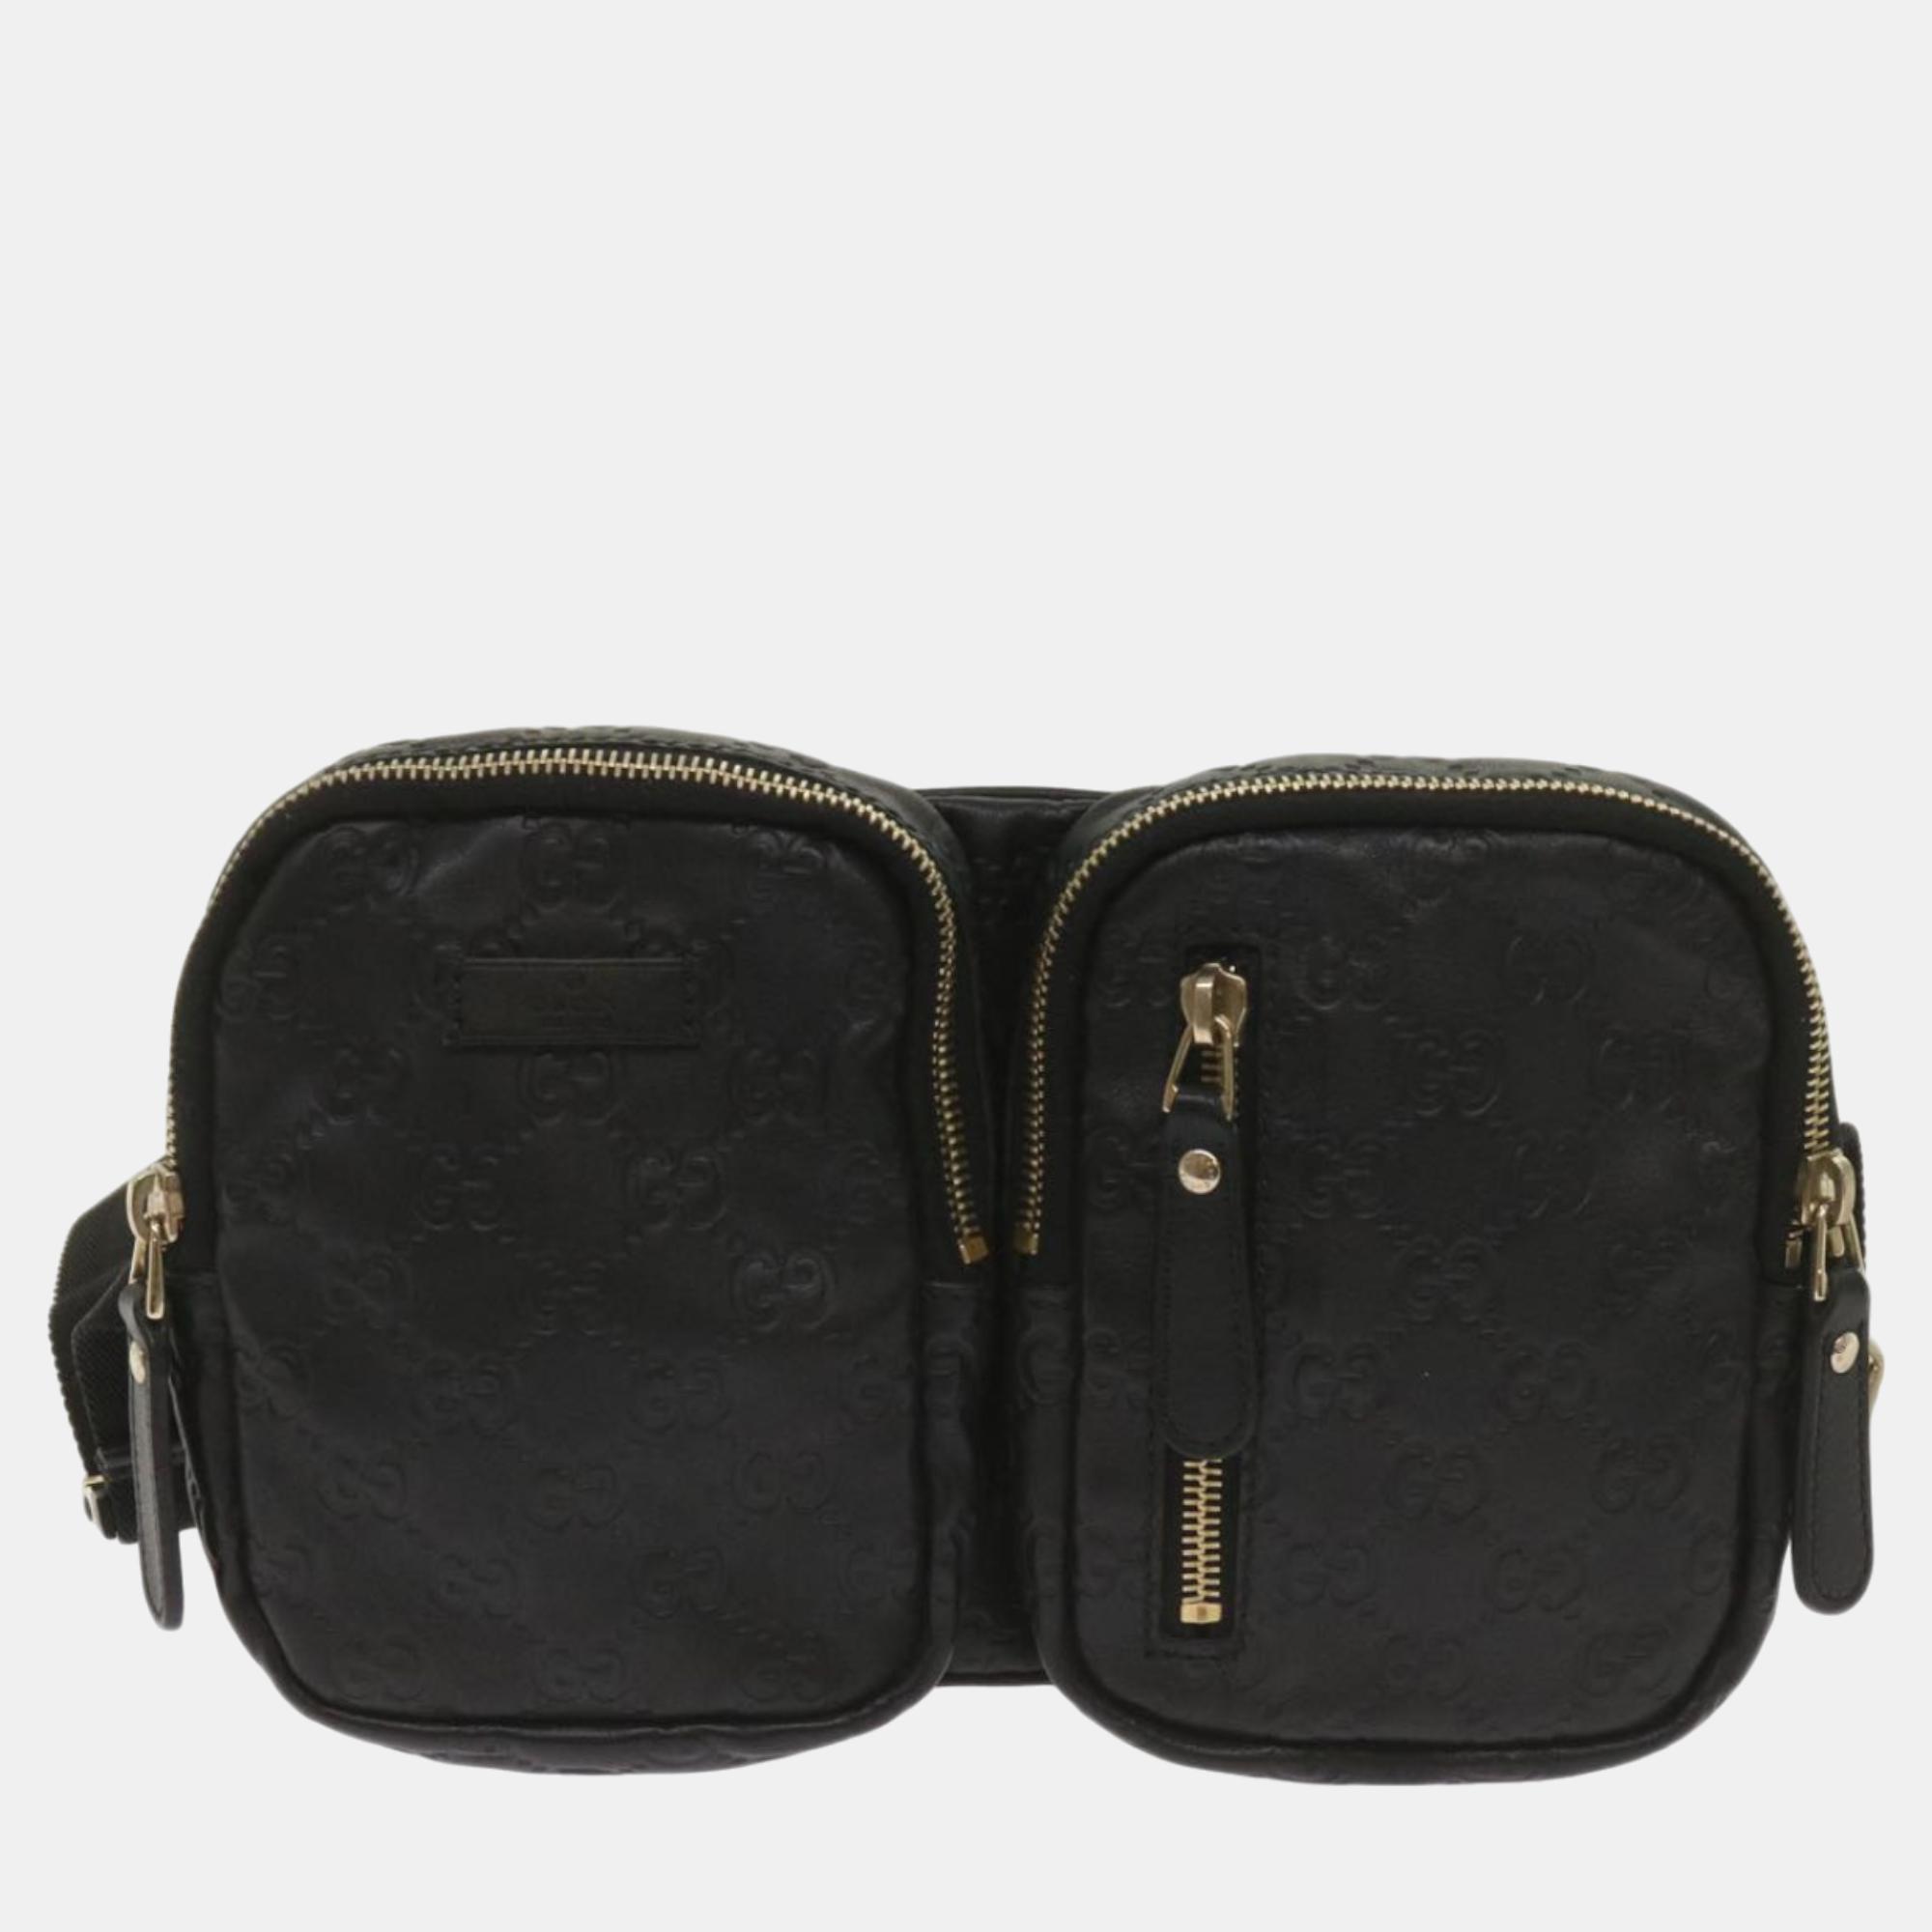 Gucci black leather gg shoulder bag